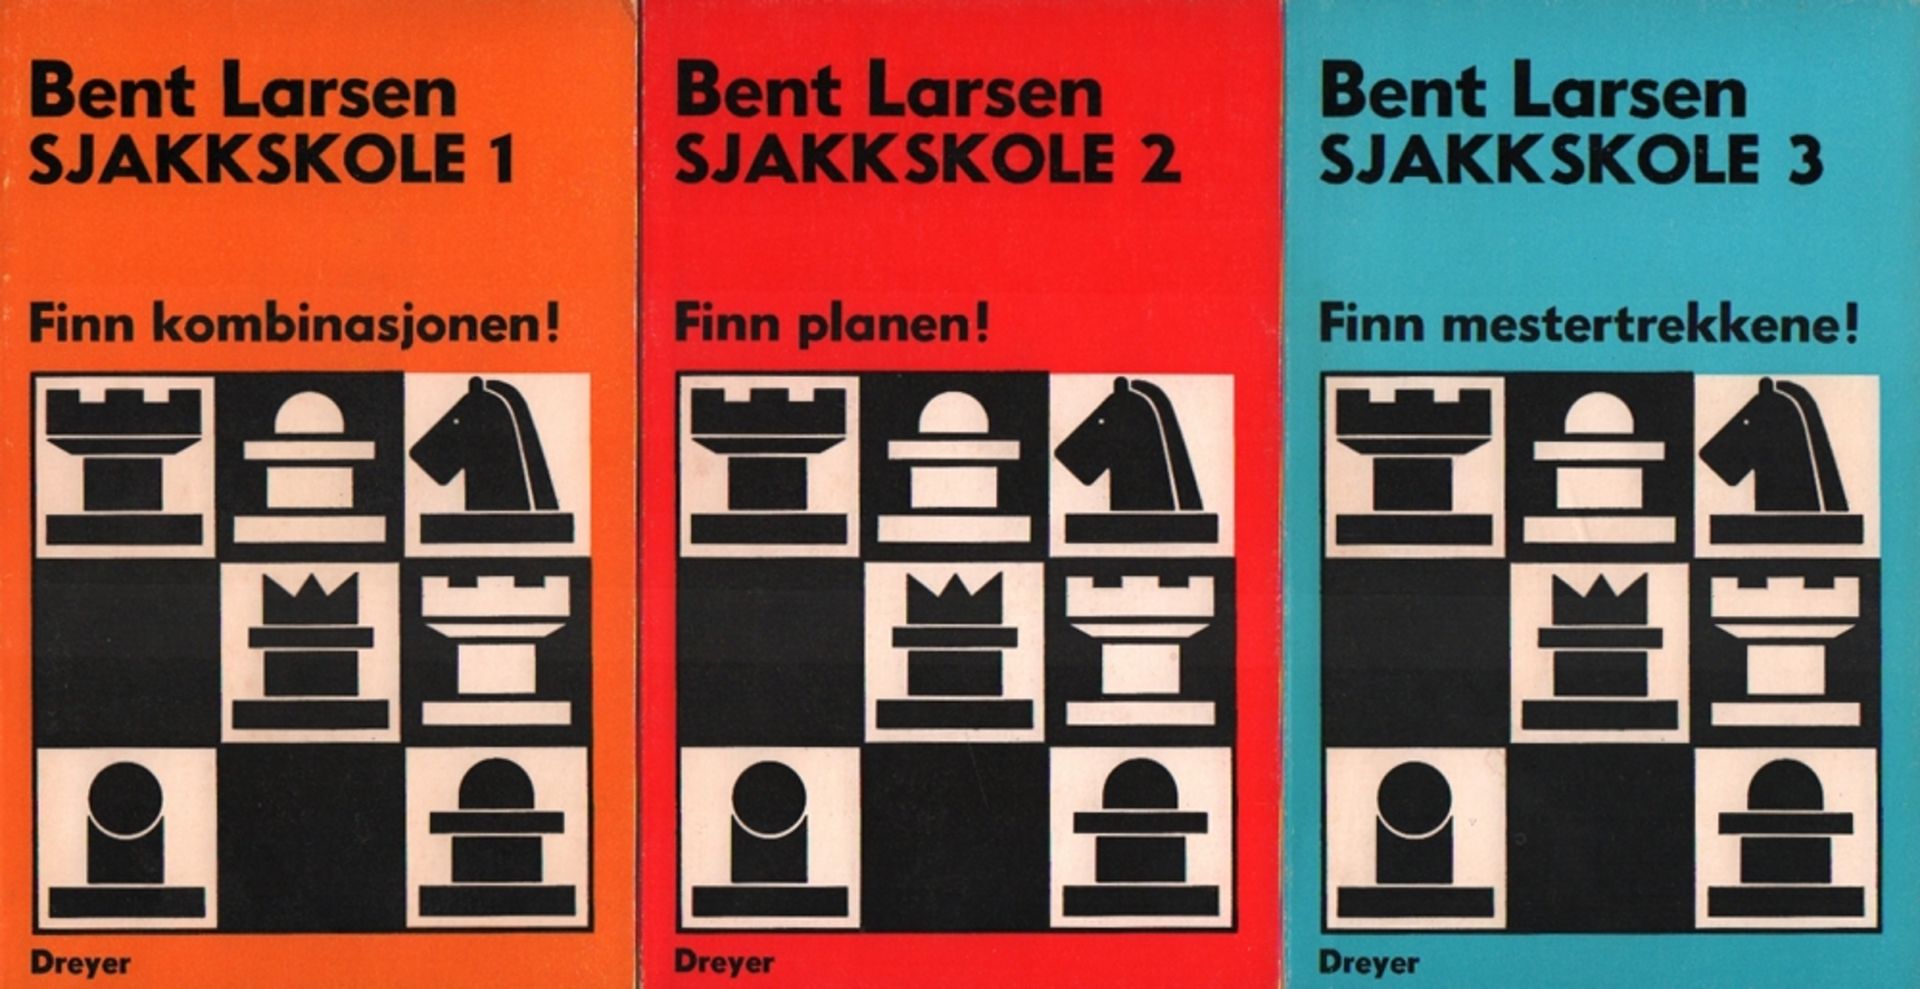 Larsen, Bent. Sjakkskole. Band 1 – 3 (von 6). Oslo, Dreyer, 1979. 8°. Mit Diagrammen. 45; 58; 47